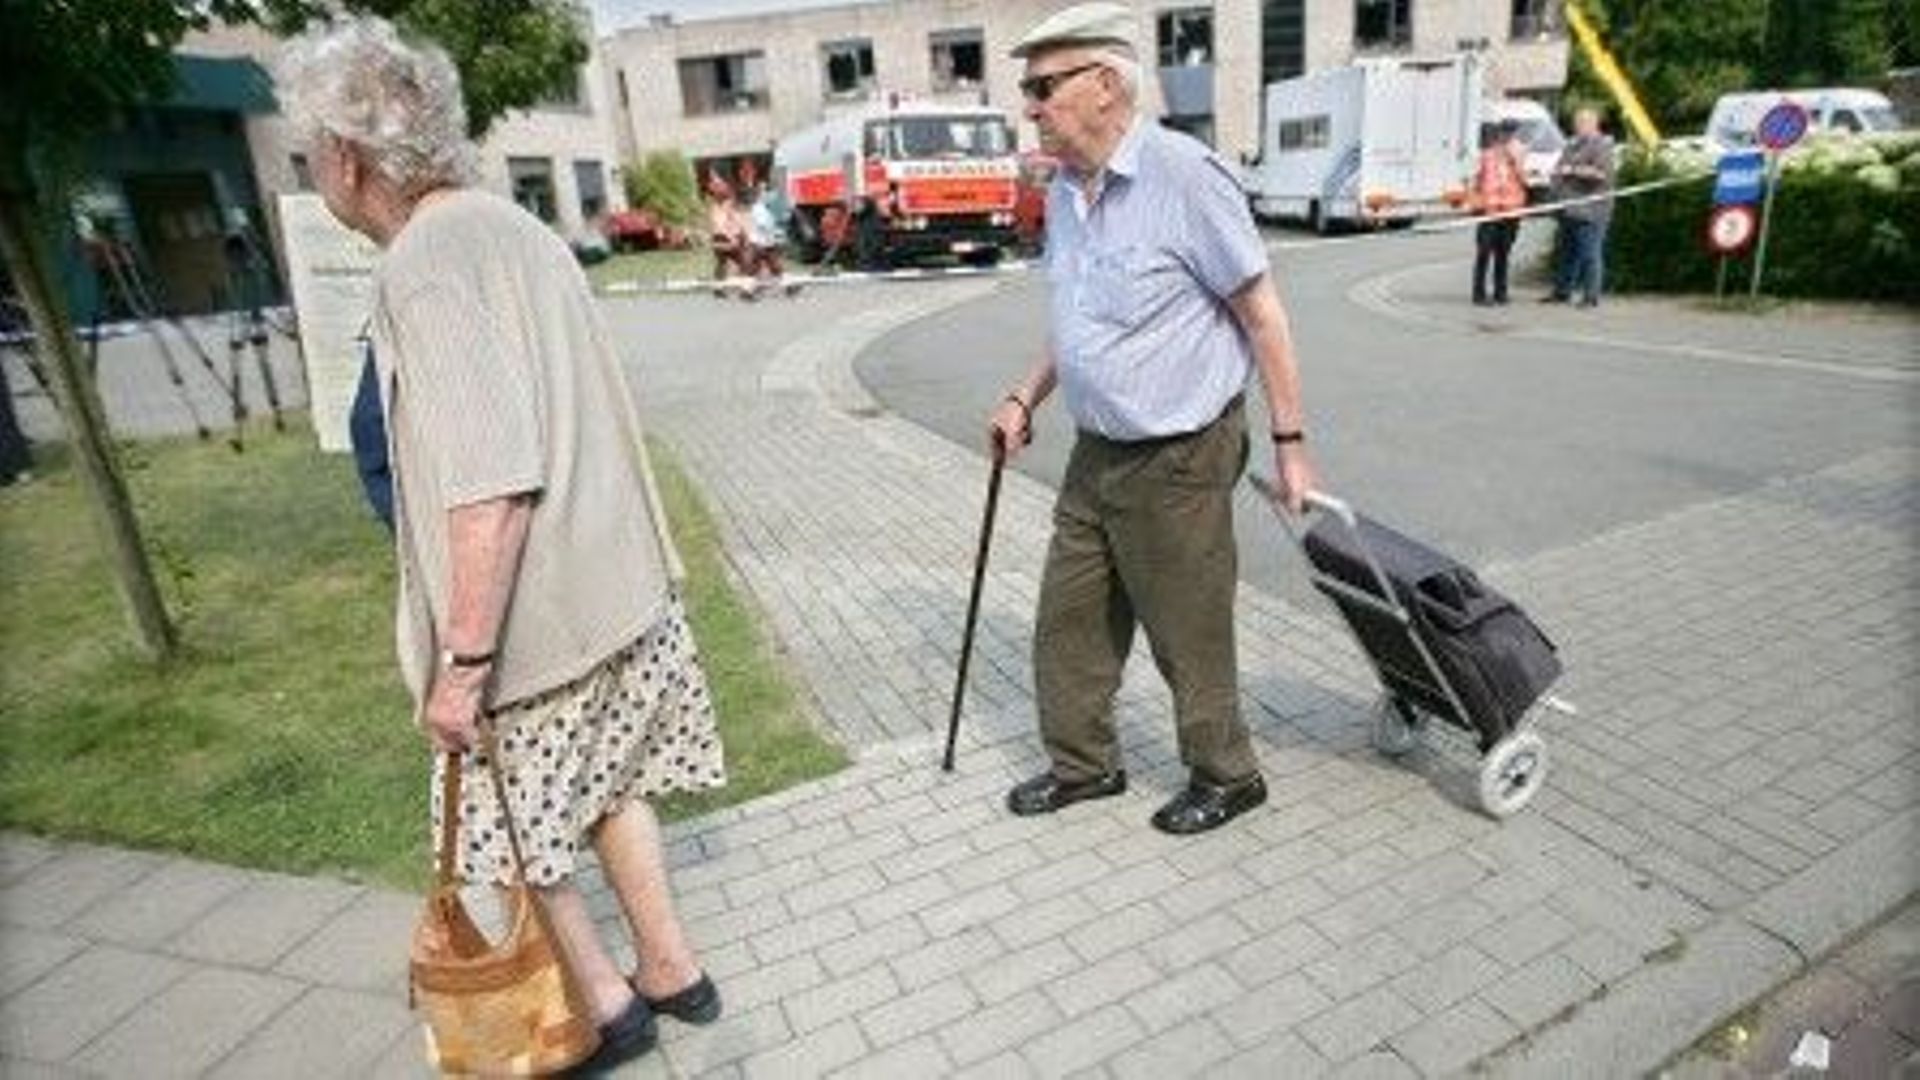 Réformer les pensions permettrait de réduire le risque de pauvreté chez les seniors